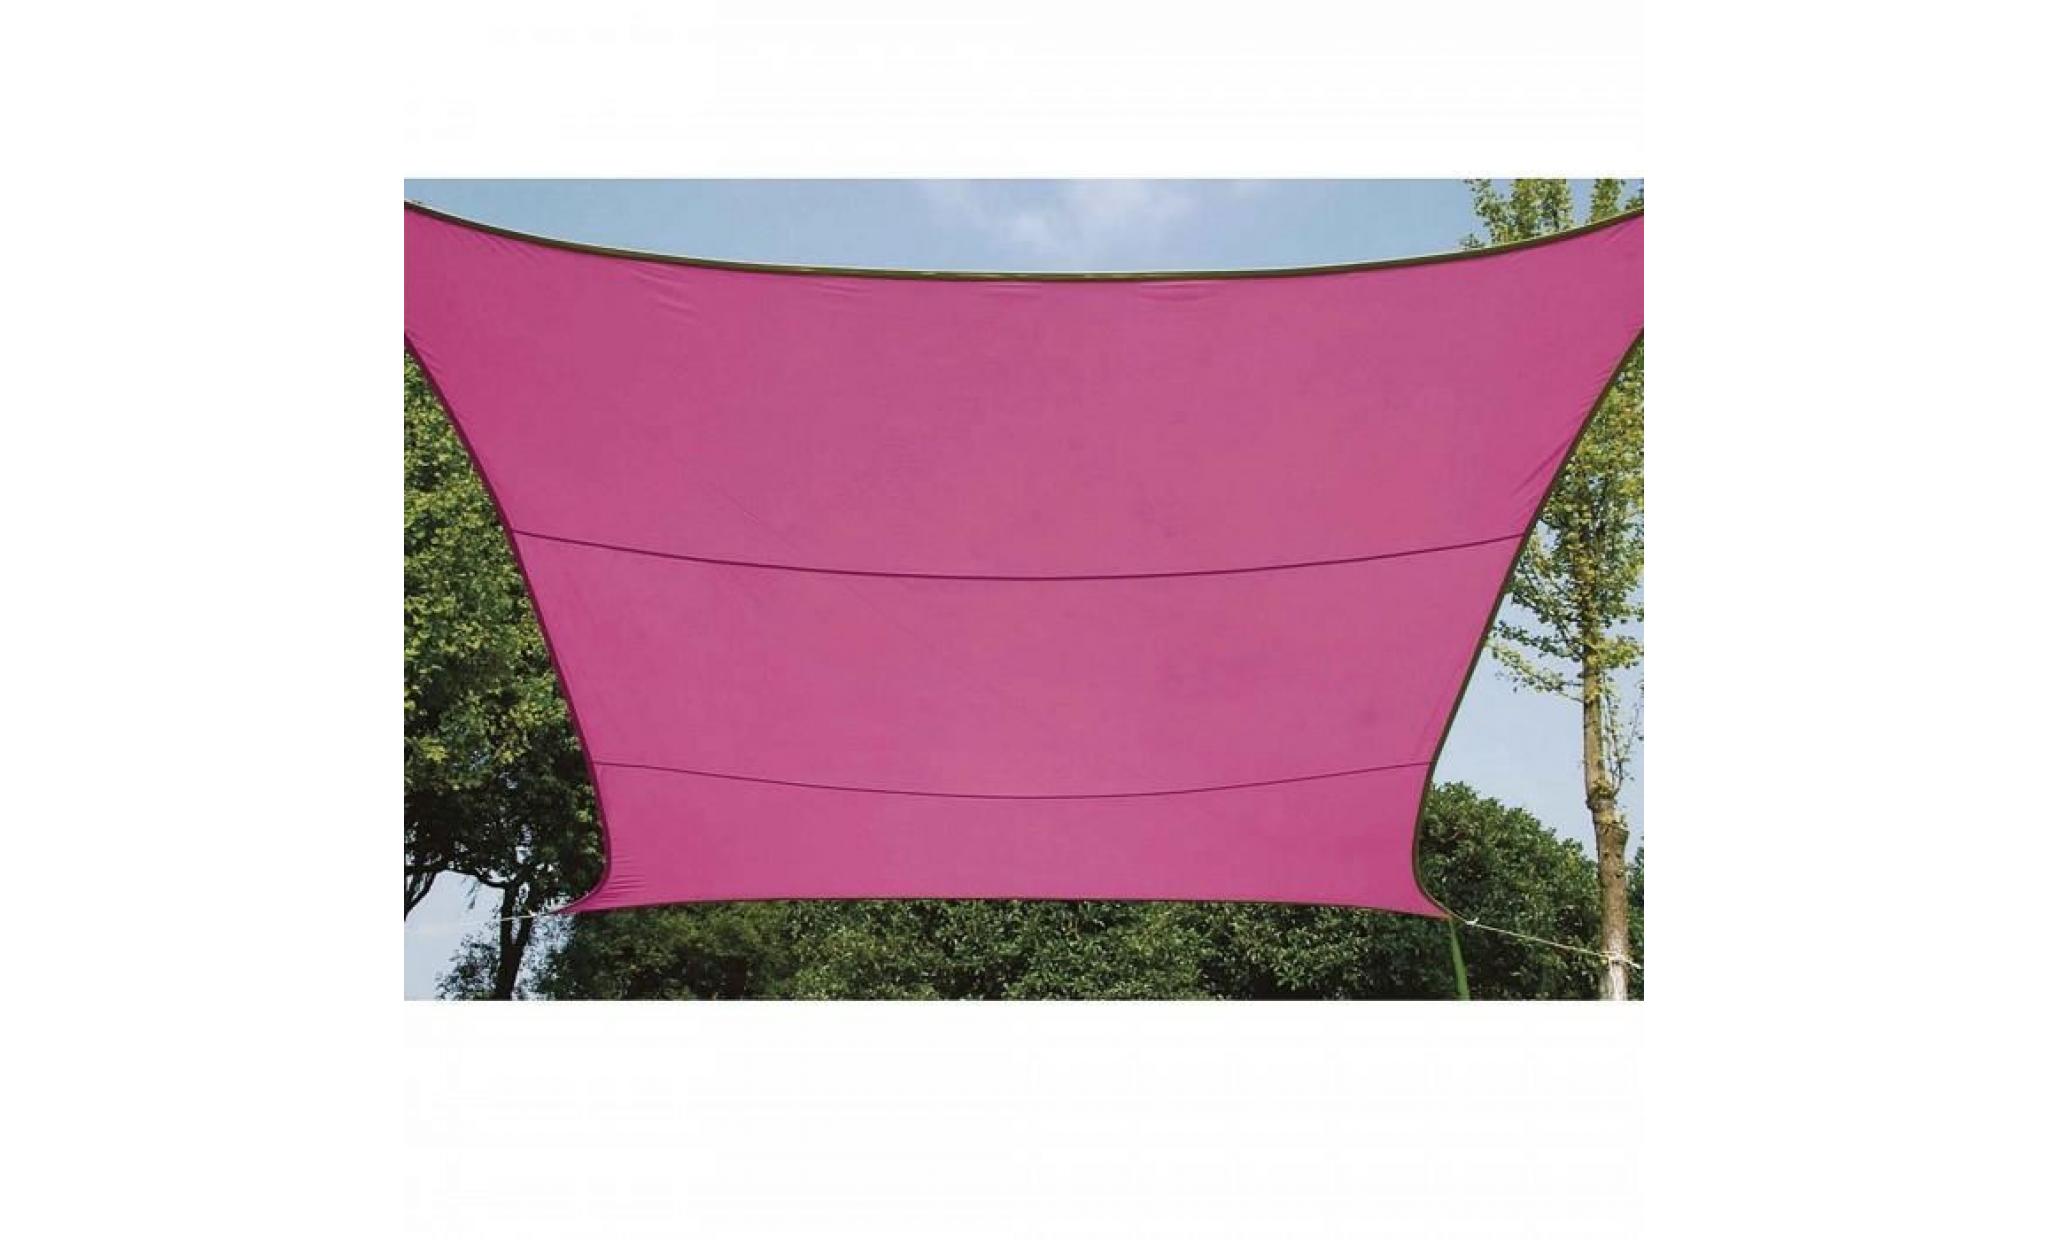 , voile d'ombrage carree 5m, ideale pour votre jardin et vos terrasses. tres belle toile couleur rose en tissu aere hydr